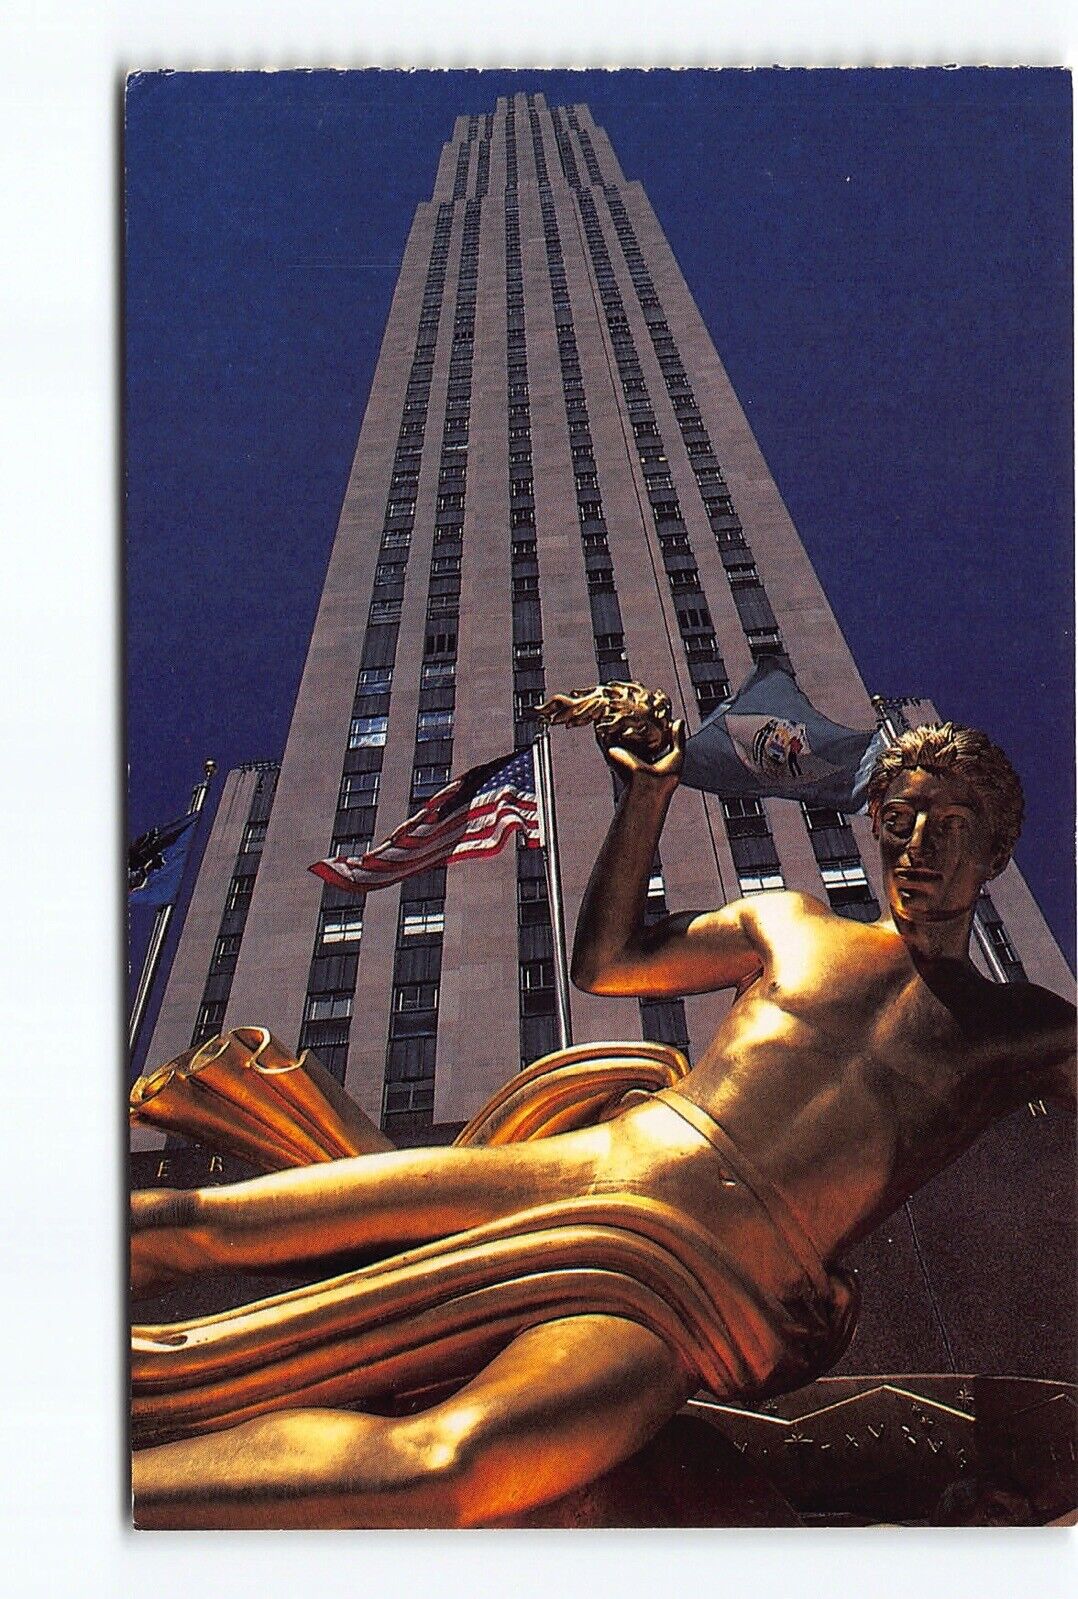 Rockefeller Center Prometheus Greek God Statue NY Chrome Postcard Vtg Unposted